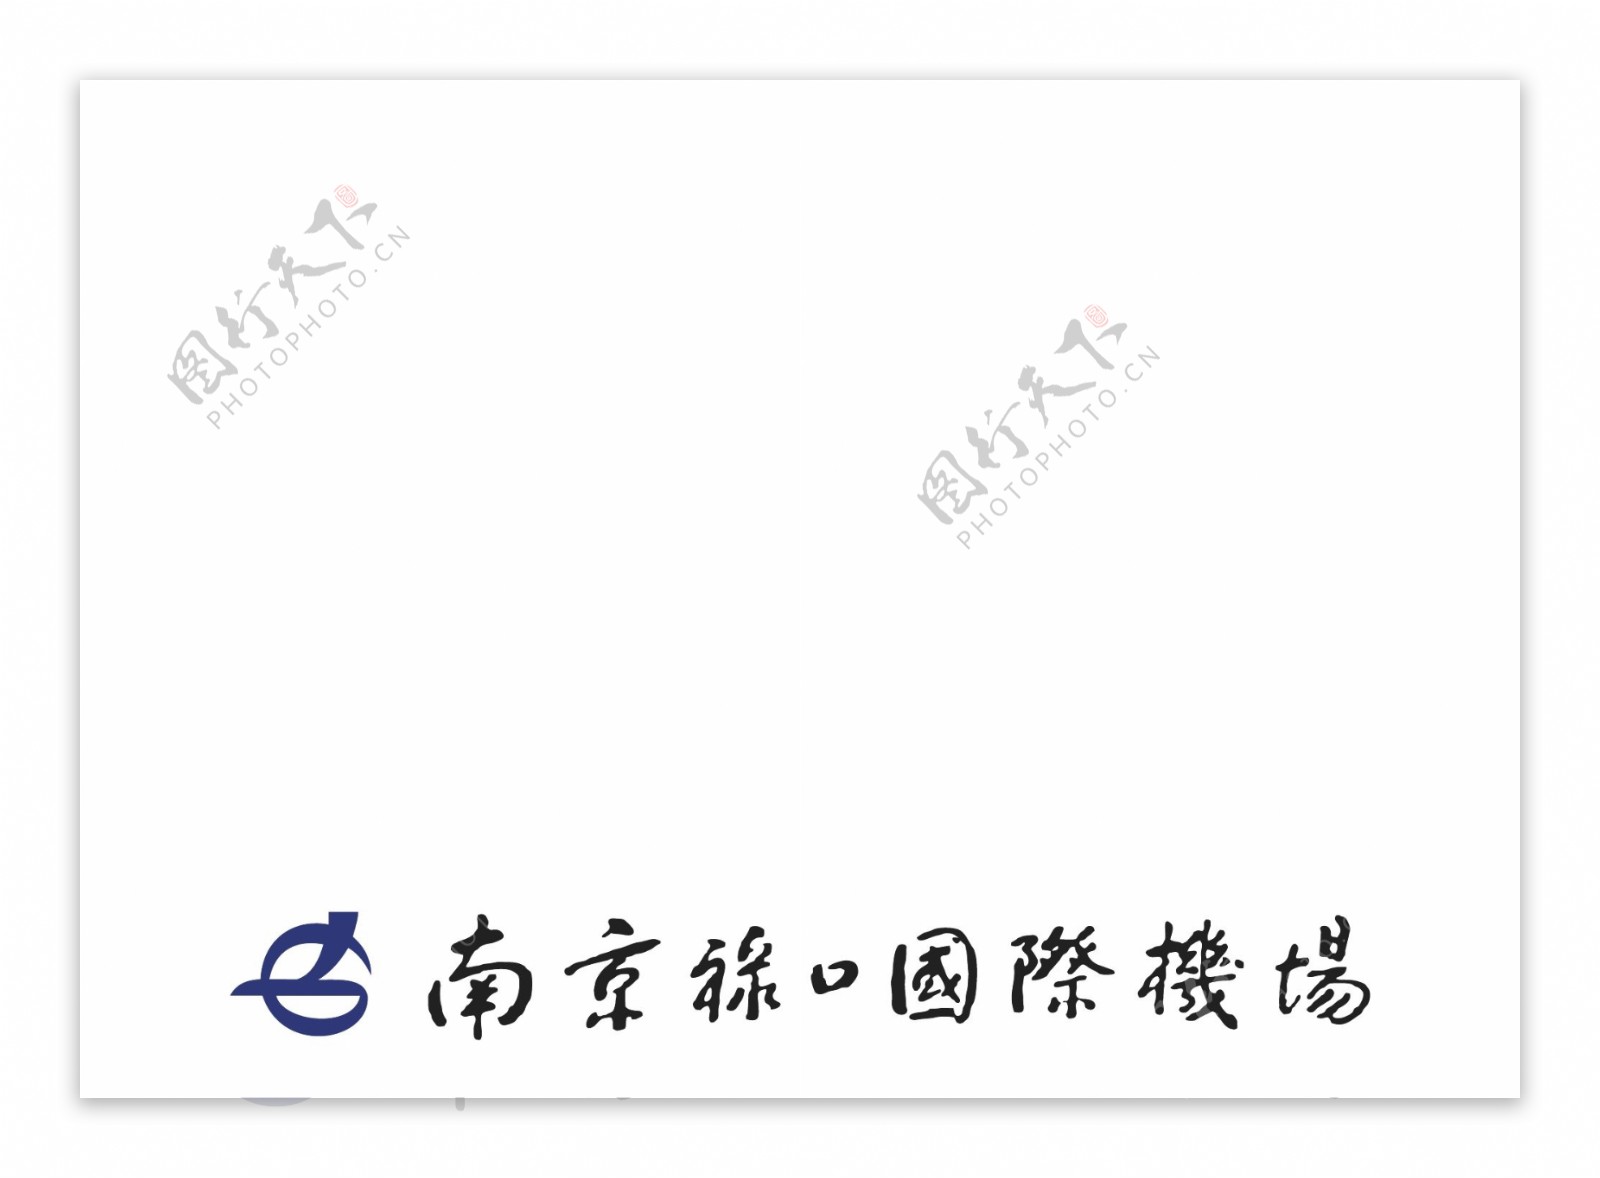 南京禄口国际机场logo